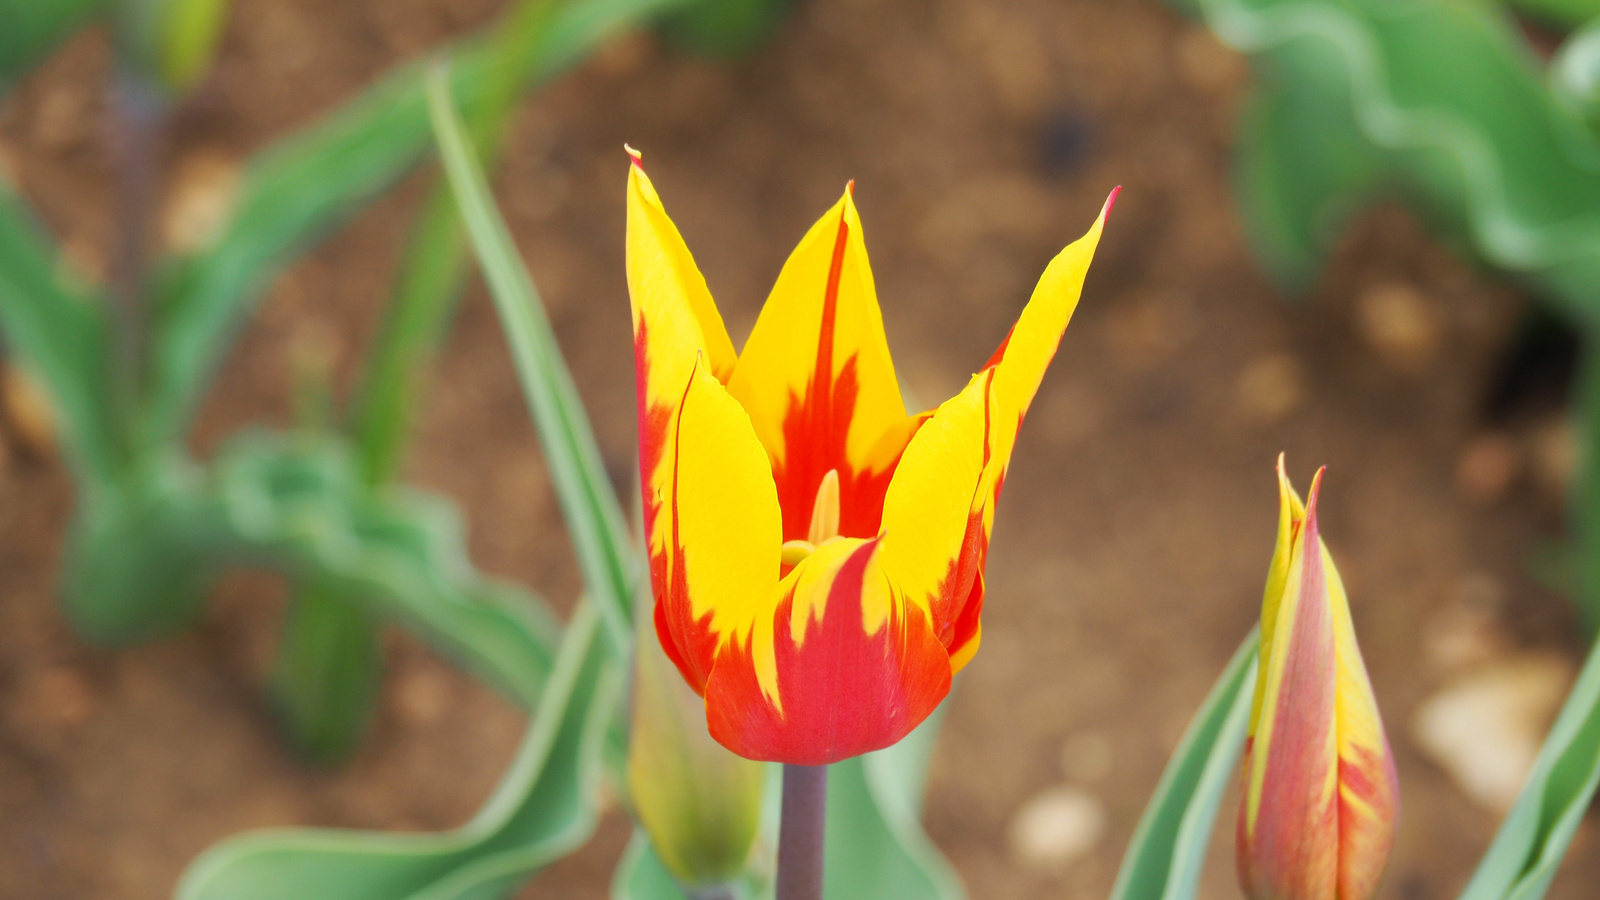 A pilisborosjenői tulipános kert, Fire wings, SzG3